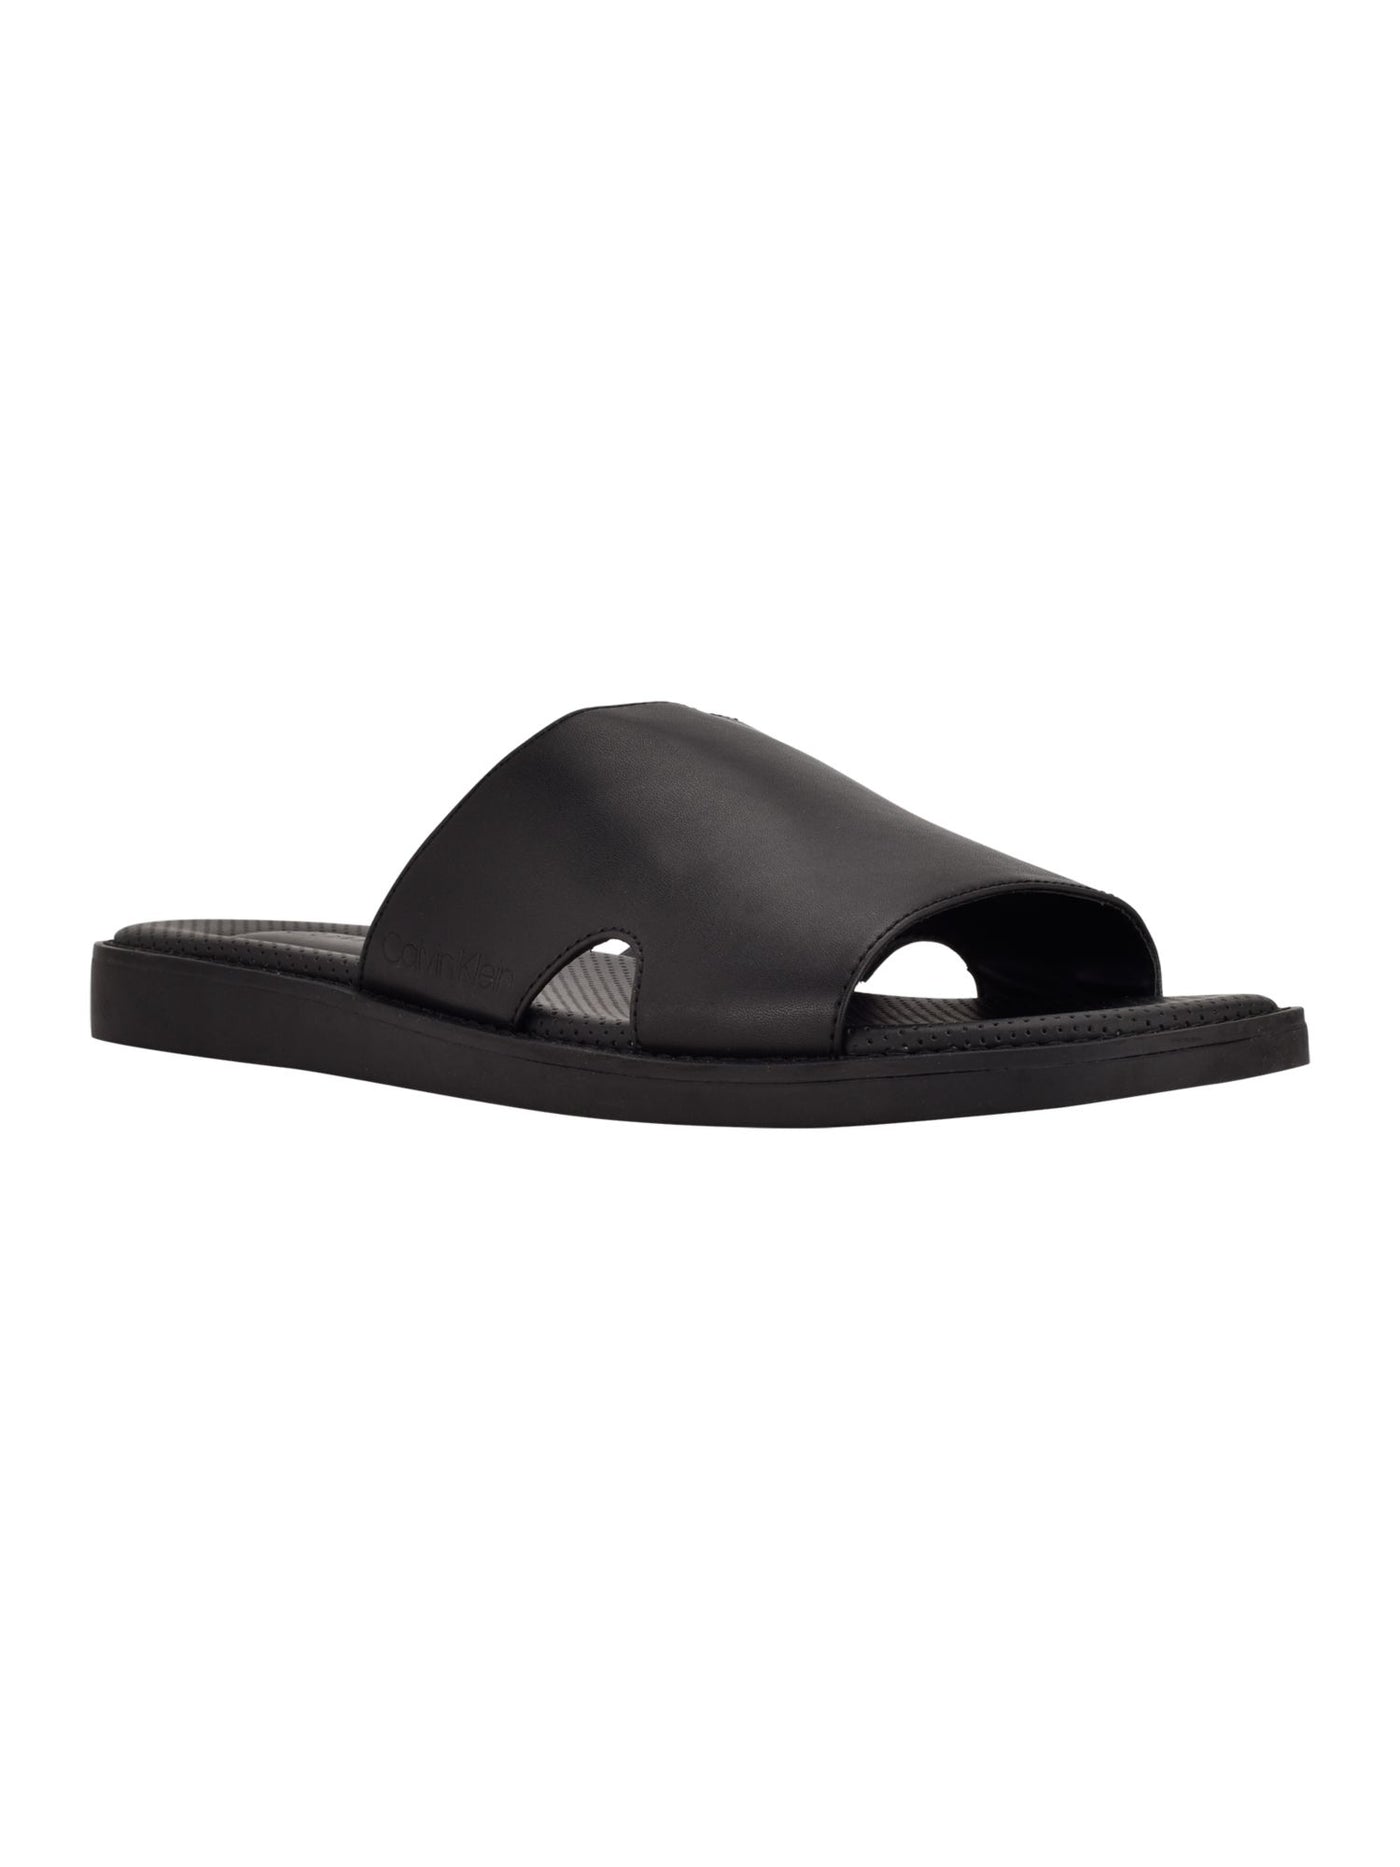 CALVIN KLEIN Mens Black Padded Goring Ethan Round Toe Wedge Slip On Slide Sandals Shoes 7.5